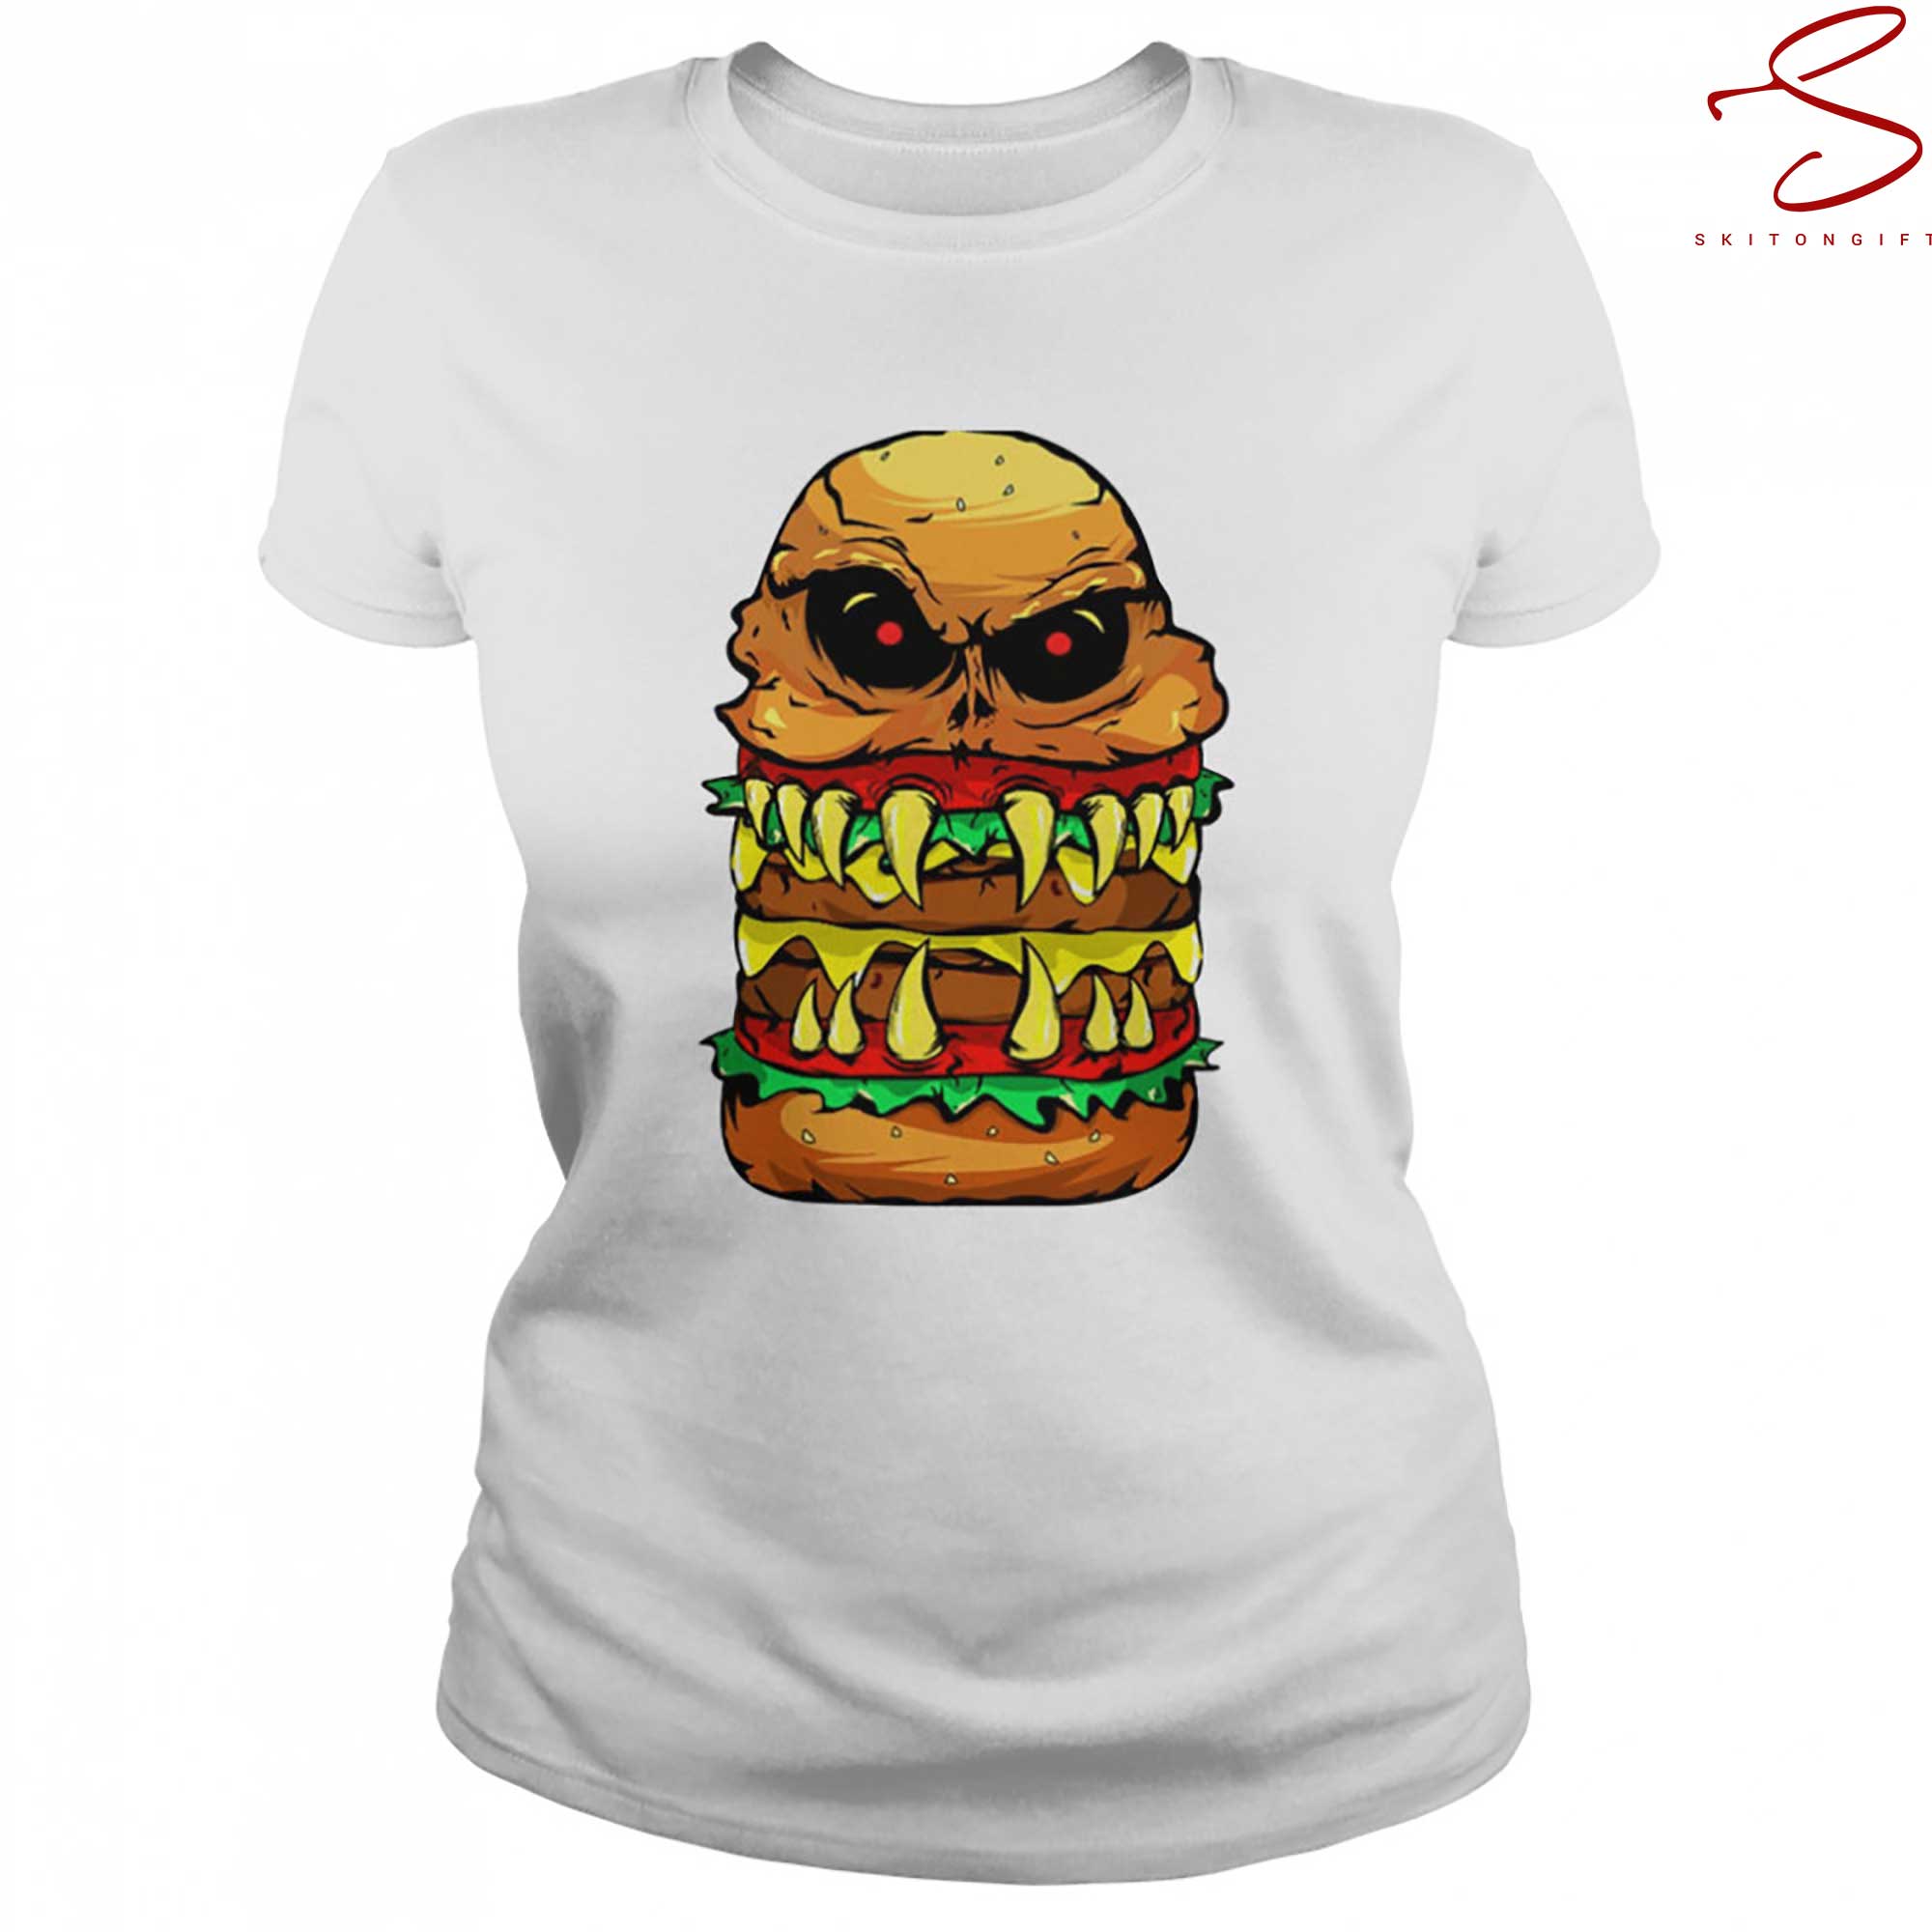 Skitongift Scary Cheeseburger For Burger Person T Shirt